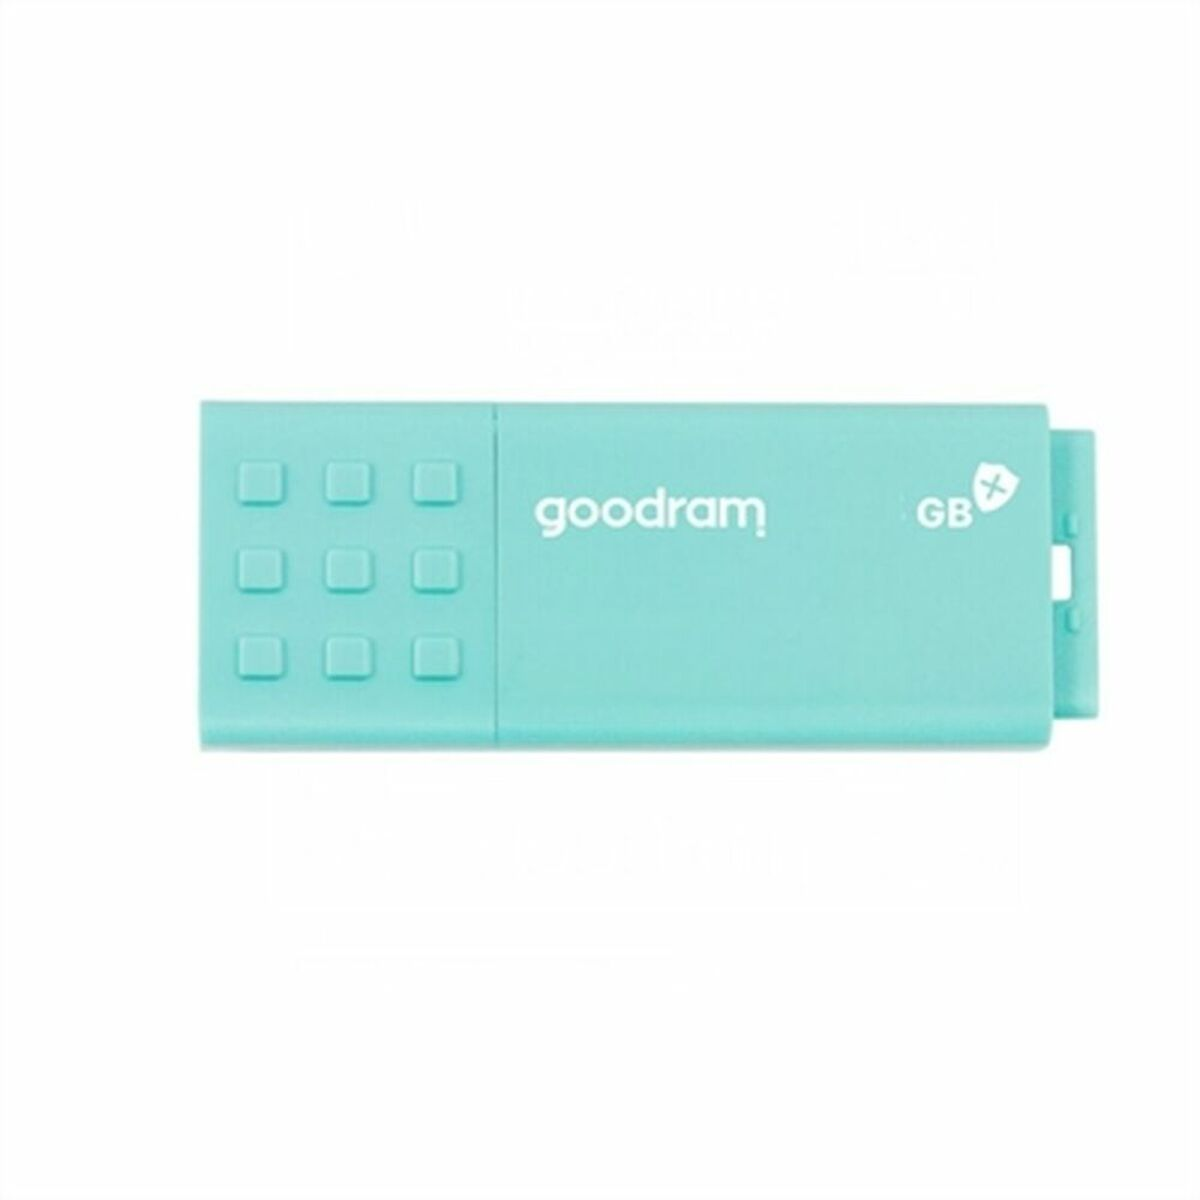 GB) GOODRAM (türkis, USB 3.0 USB UME3 Care 16 Stick 16GB